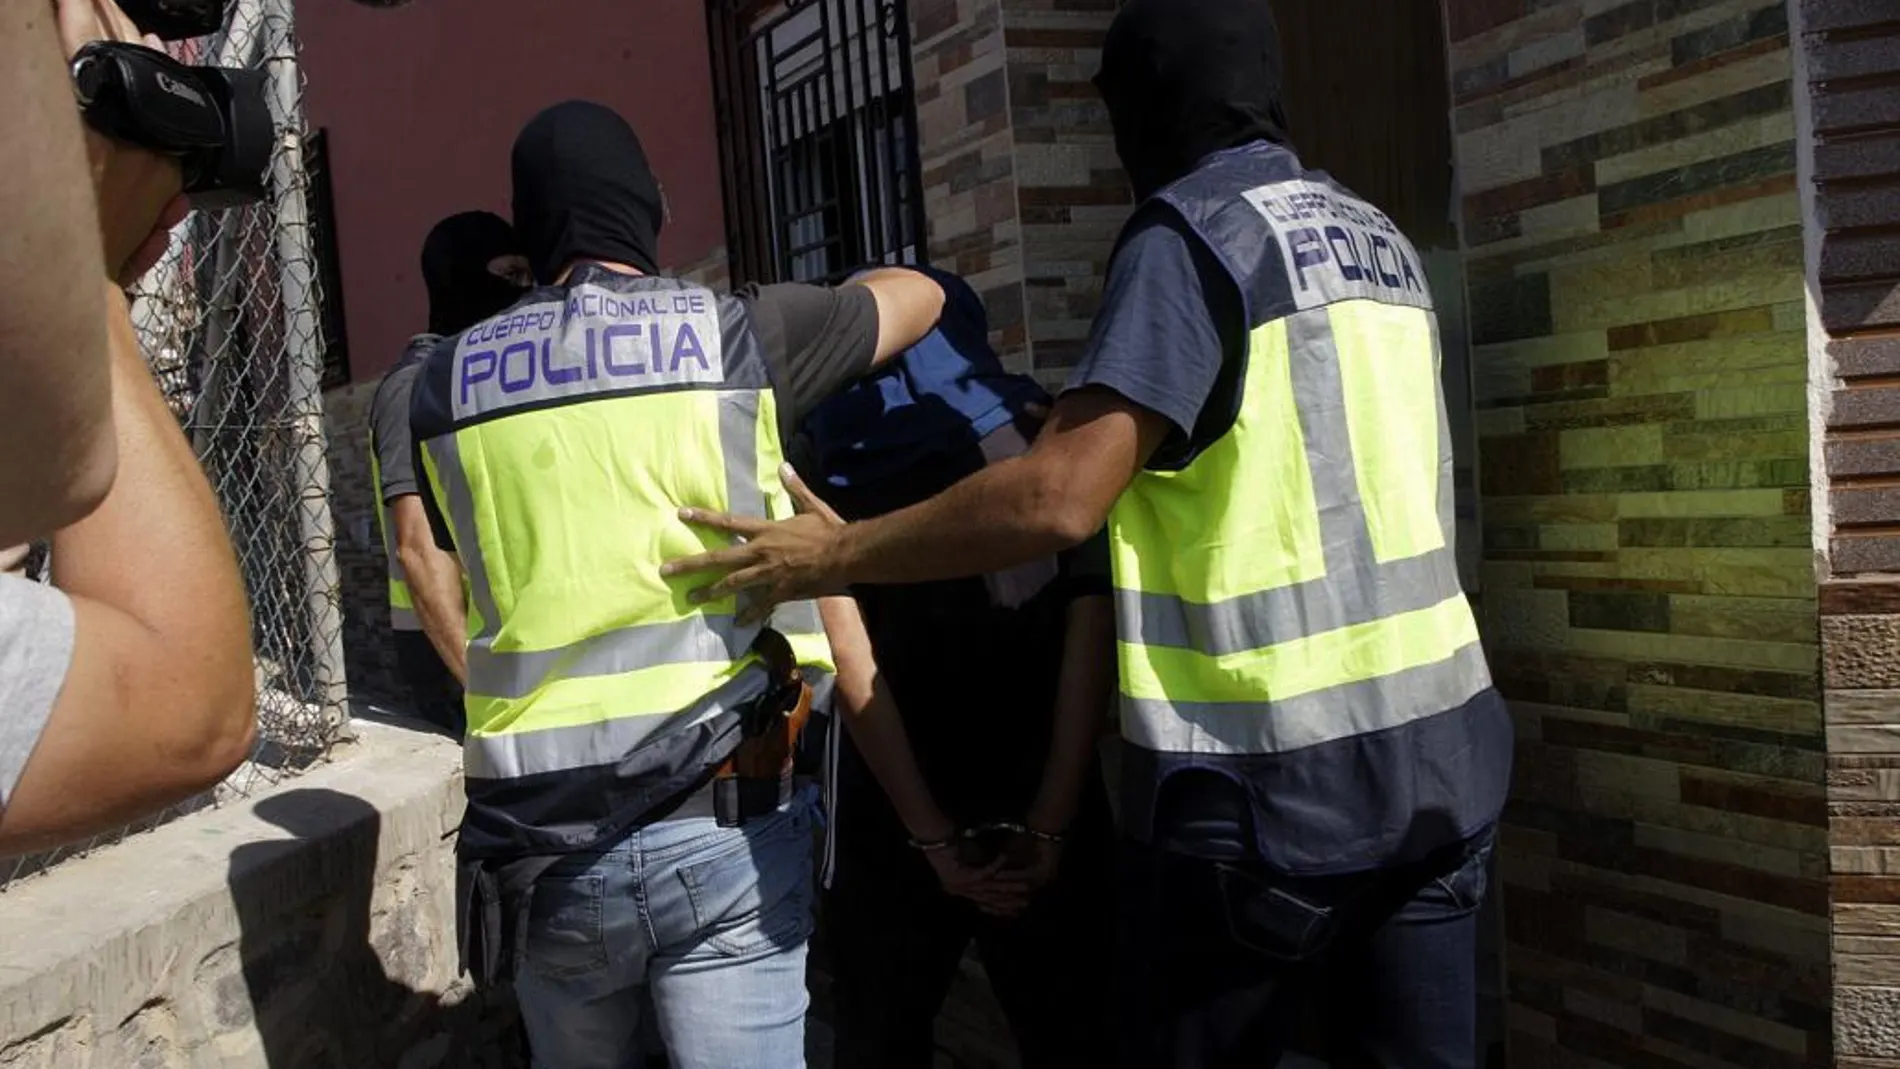 Momento en el que agentes de la Policía proceden a la detención de uno de los miembros de la célula yihadista en Melilla